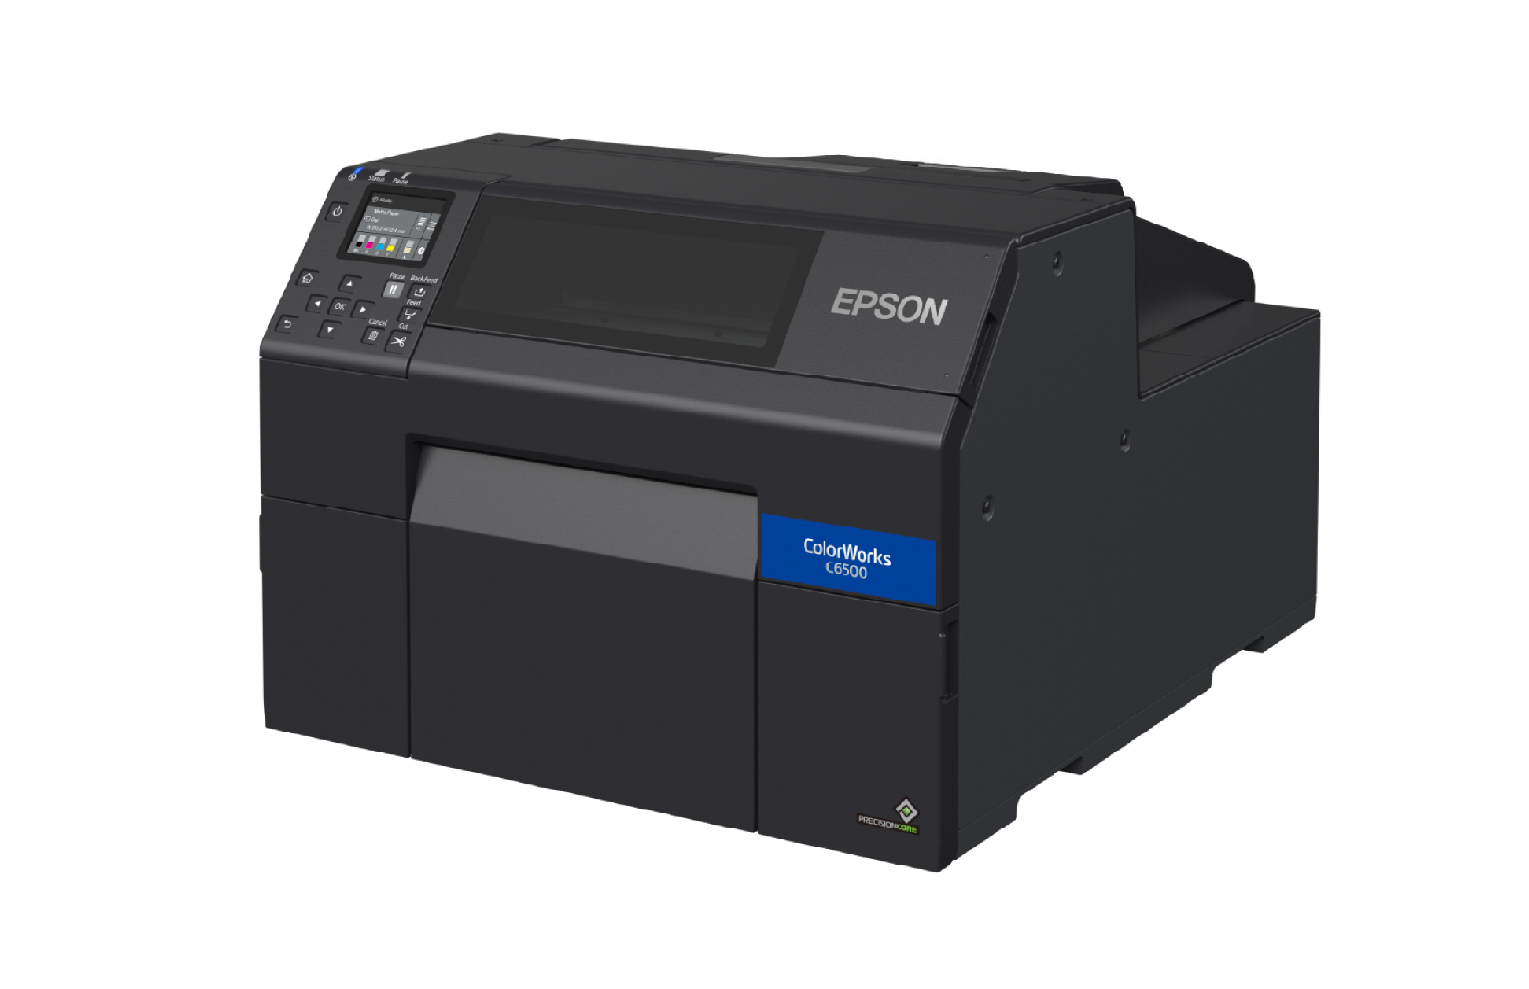 Epson C6500Ae Label Printer